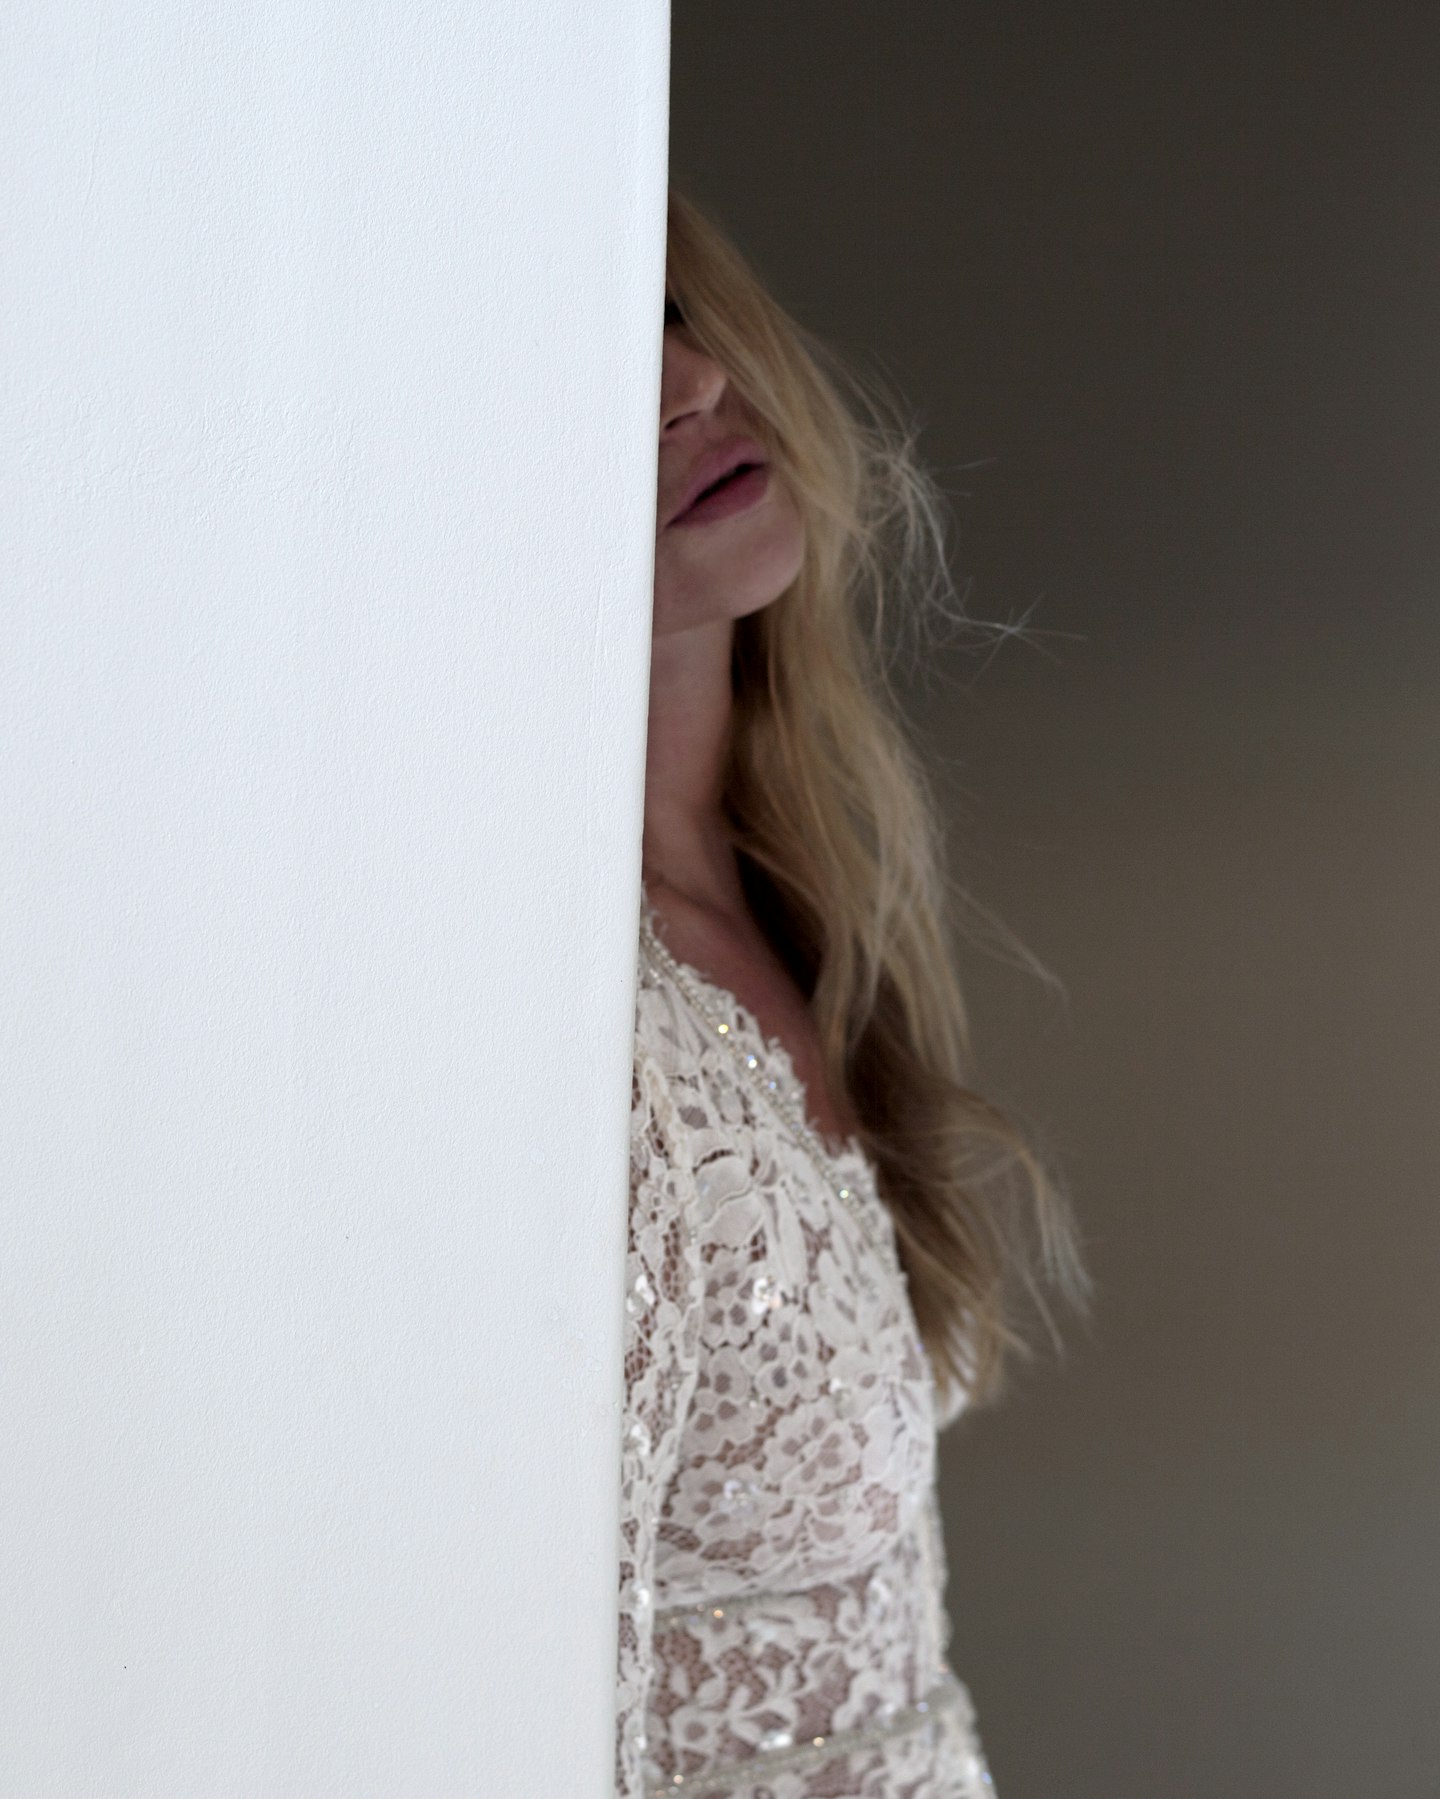 Kate Moss wearing a white lace dress